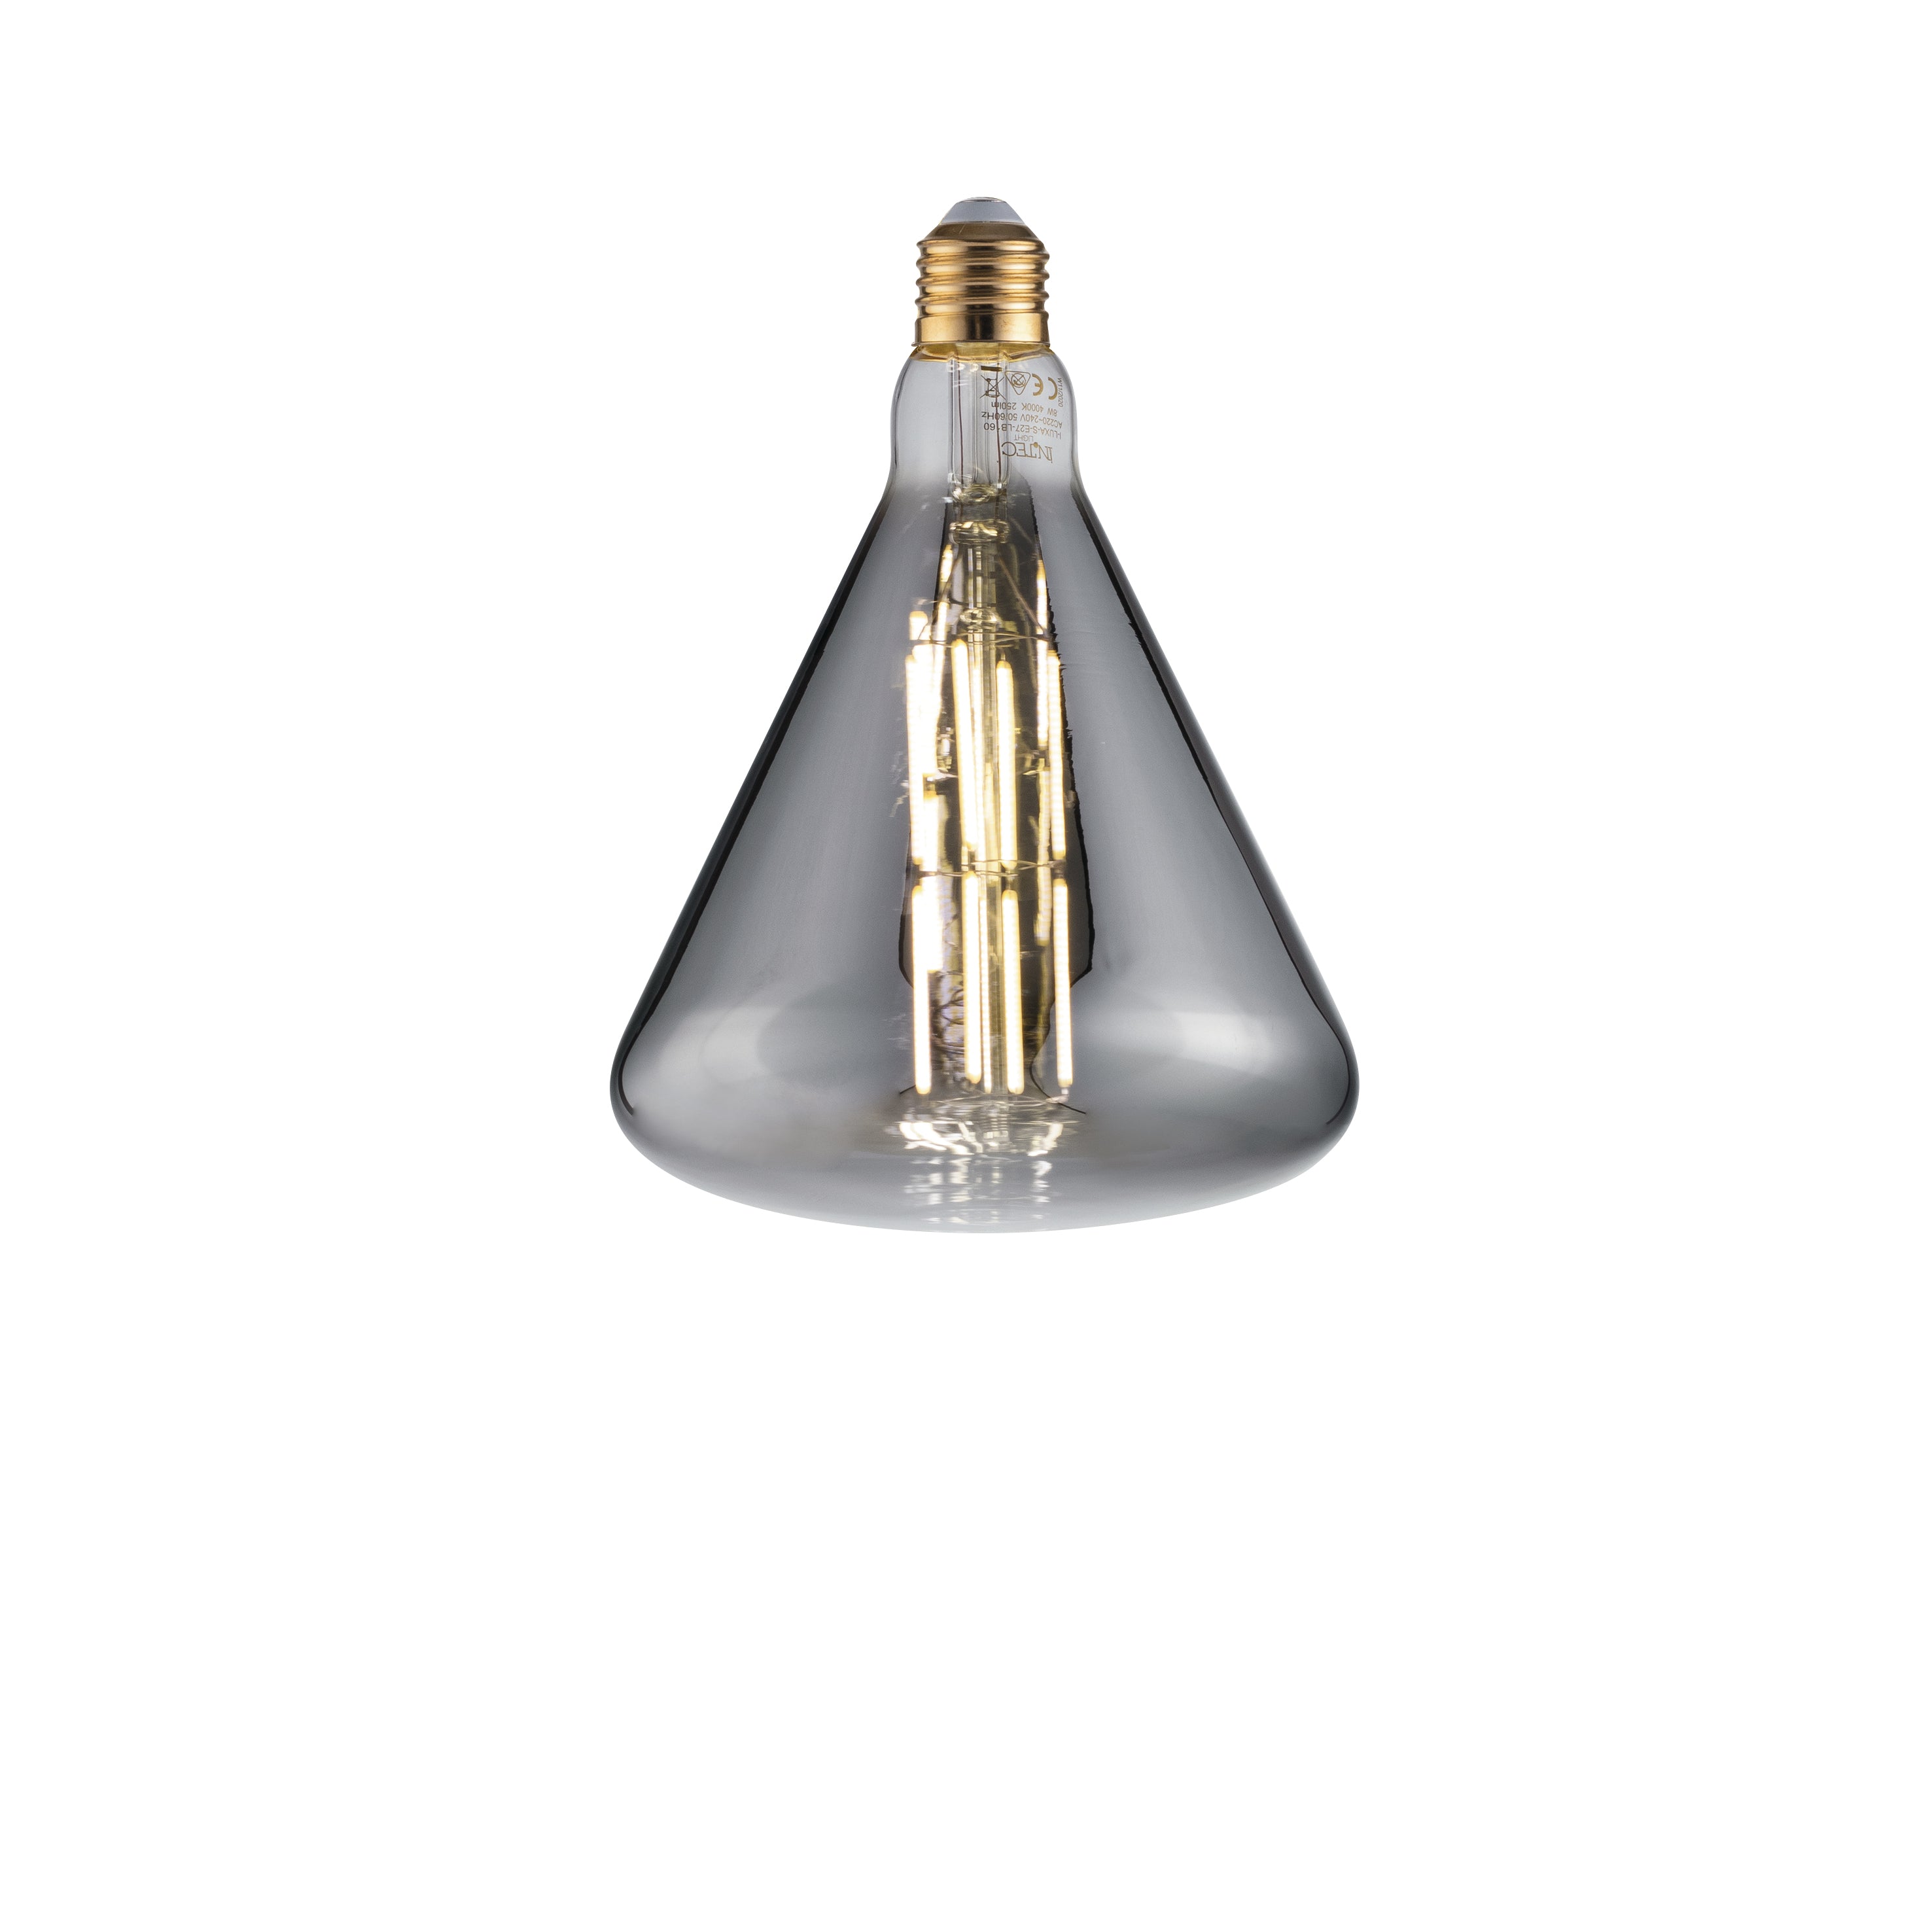 Bombilla de humo decorativa LED LUXA 8W casquillo E27, luz natural 21,5x16 cm.